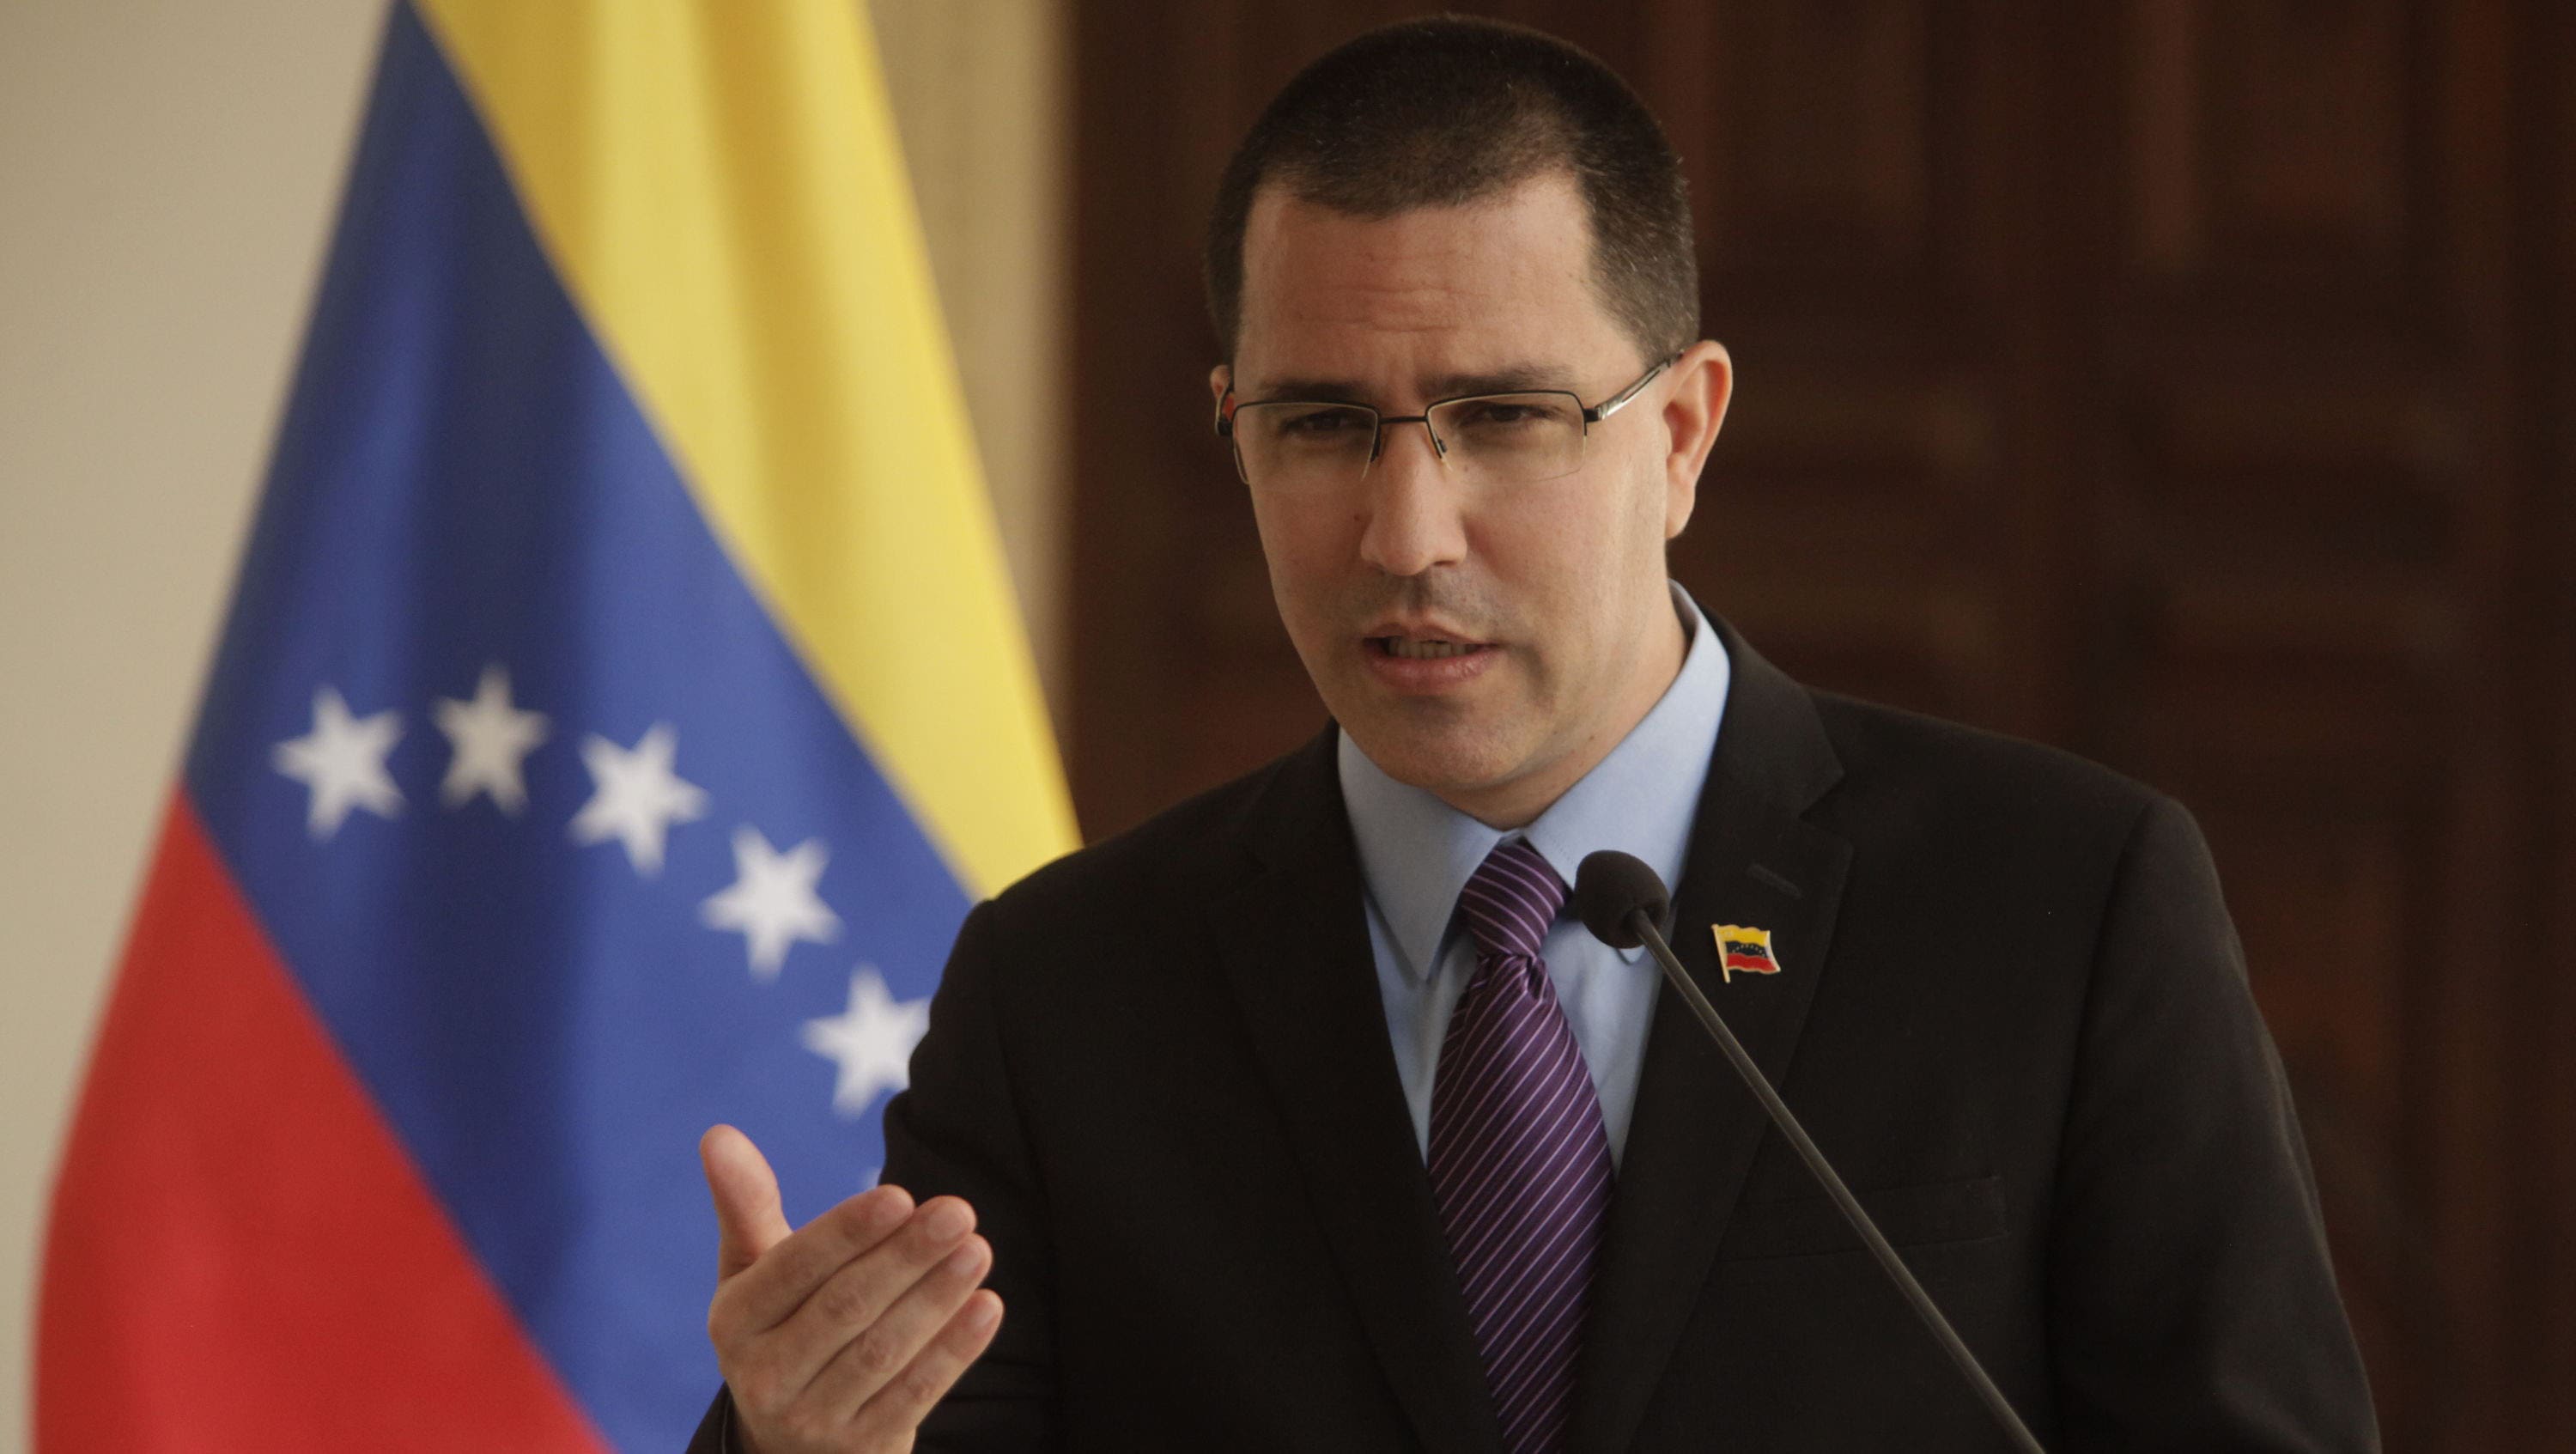 El diplomático venezolano destacó que la Fuerza Armada venezolana se mantuvo en los límites fronterizos venezolanos.